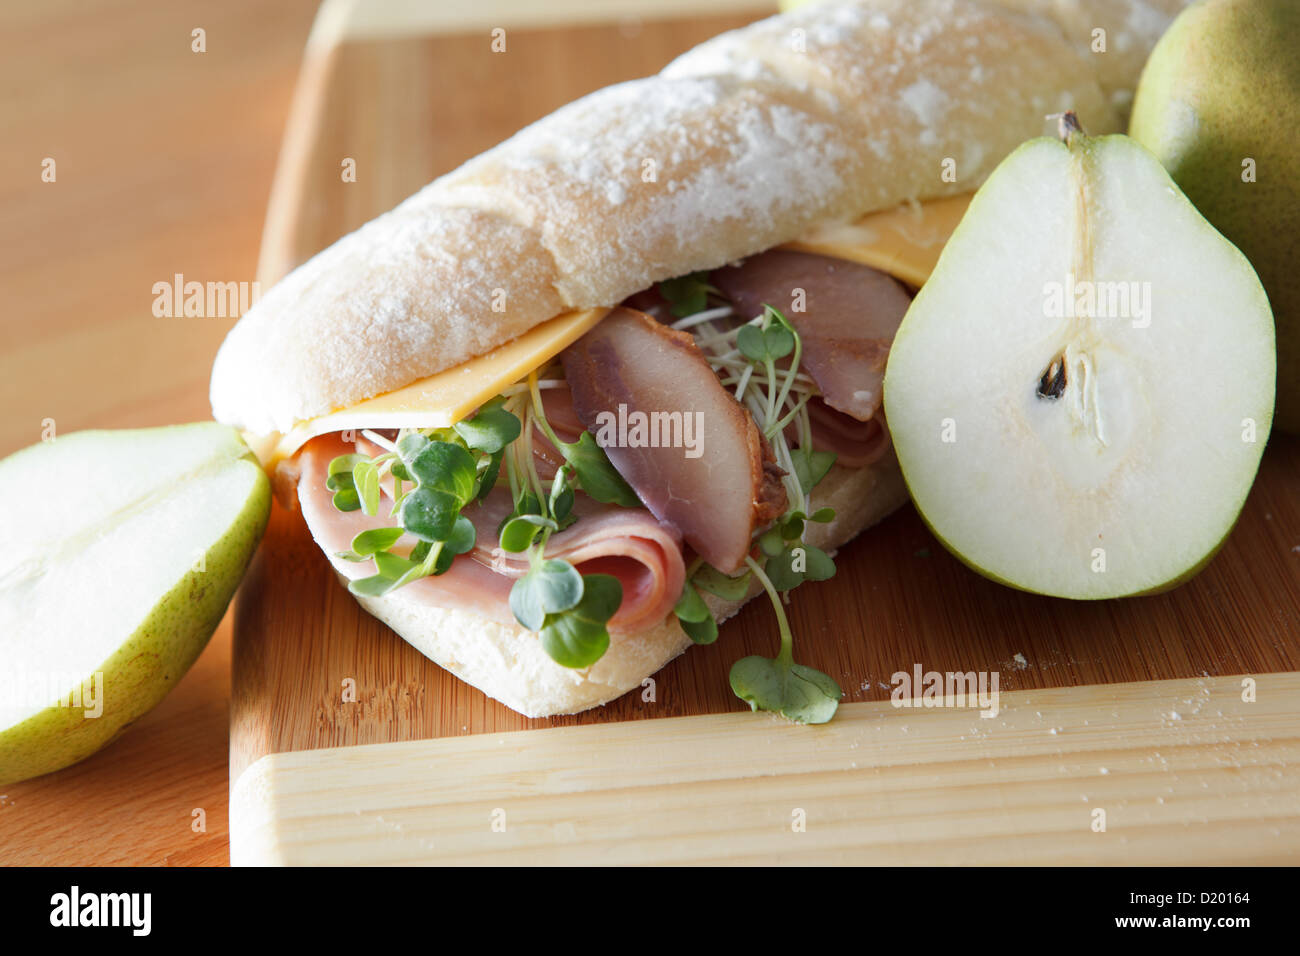 Jambon, fromage et poire pochée sandwich sur pain artisanal frais Banque D'Images